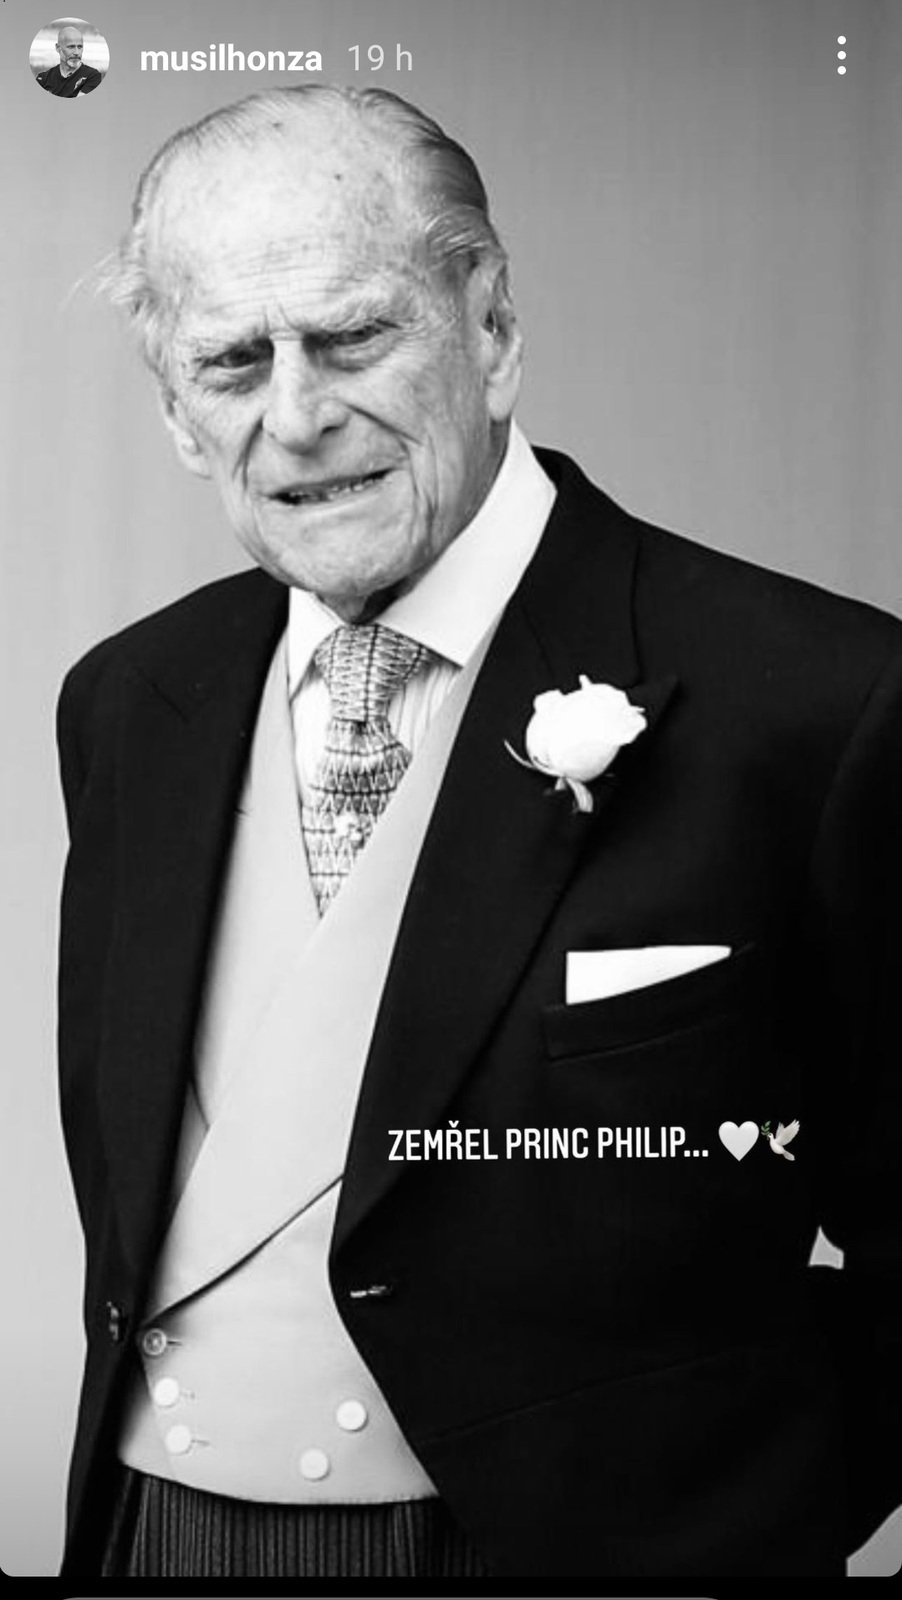 České celebrity reagují na smrt prince Philipa